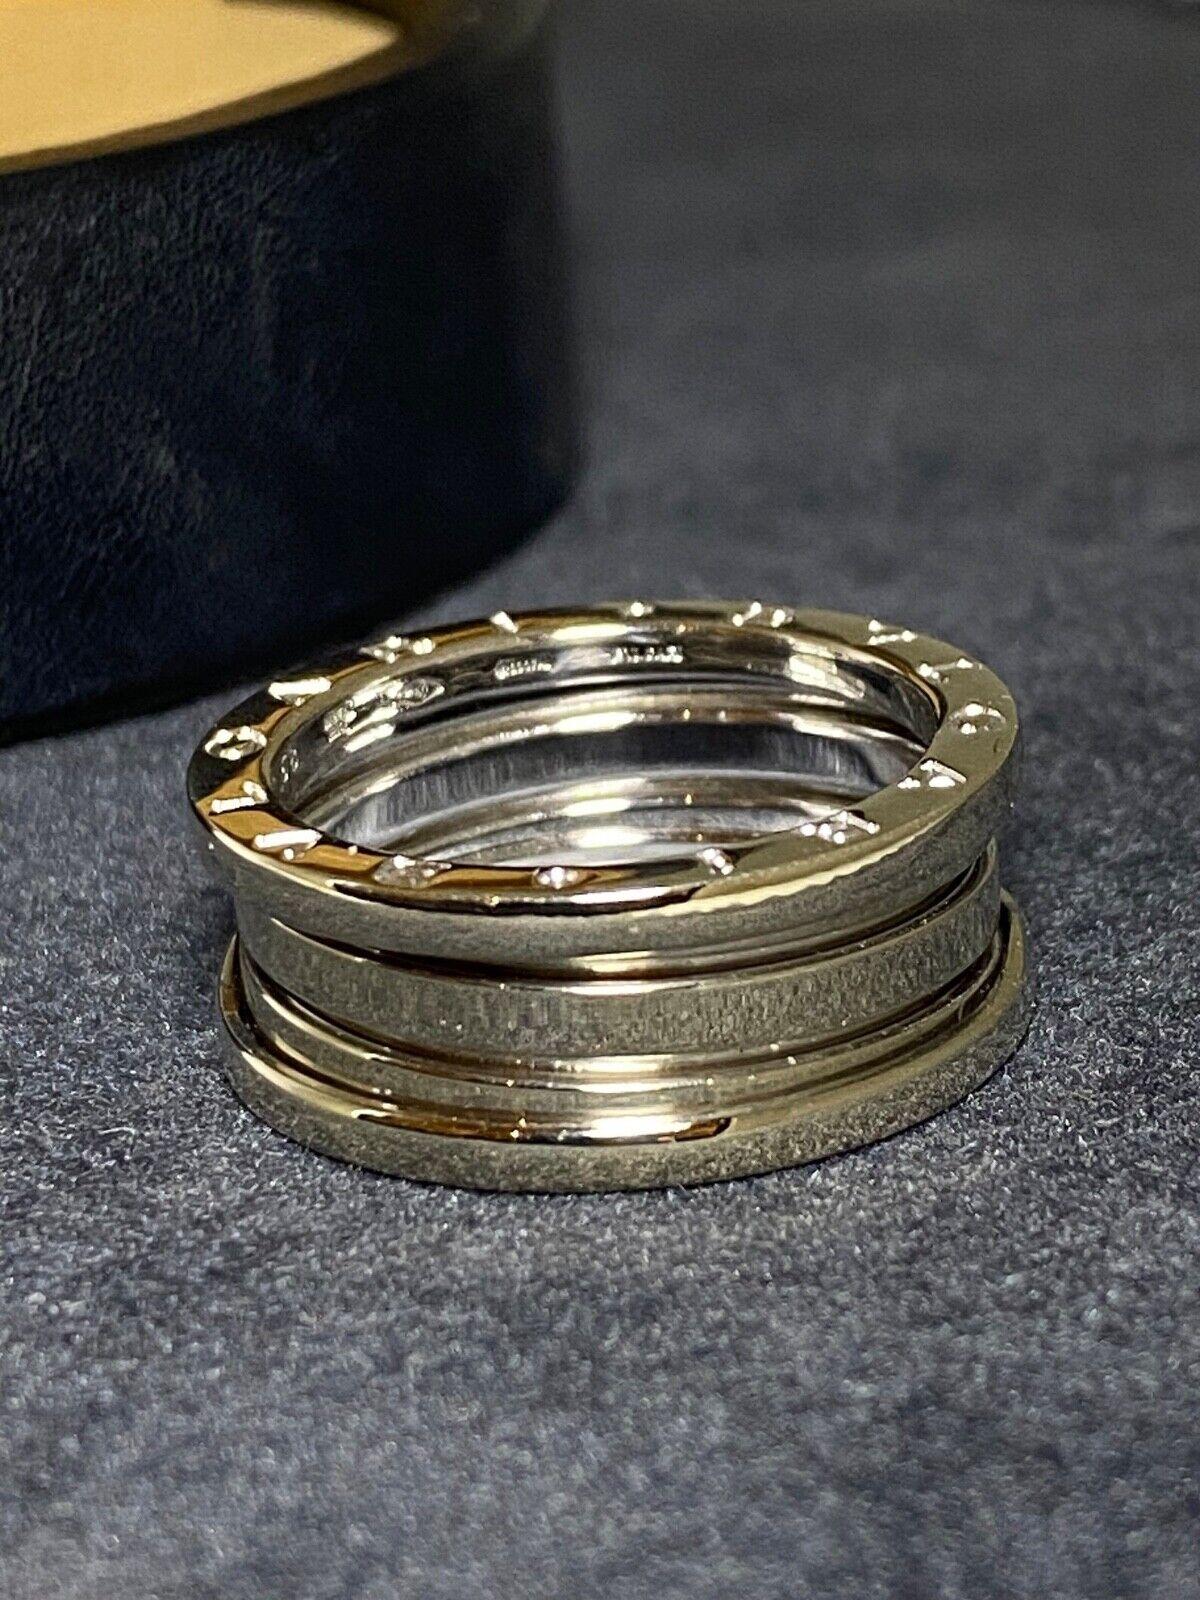 Issue de la collection iconique et immédiatement reconnaissable BVLGARI B-Zero 1, 
Cet anneau est finement travaillé en or blanc 18 carats.

En excellent état, 
la pièce porte le poinçon Bulgari, signé et estampillé à l'intérieur, 
Taille de la